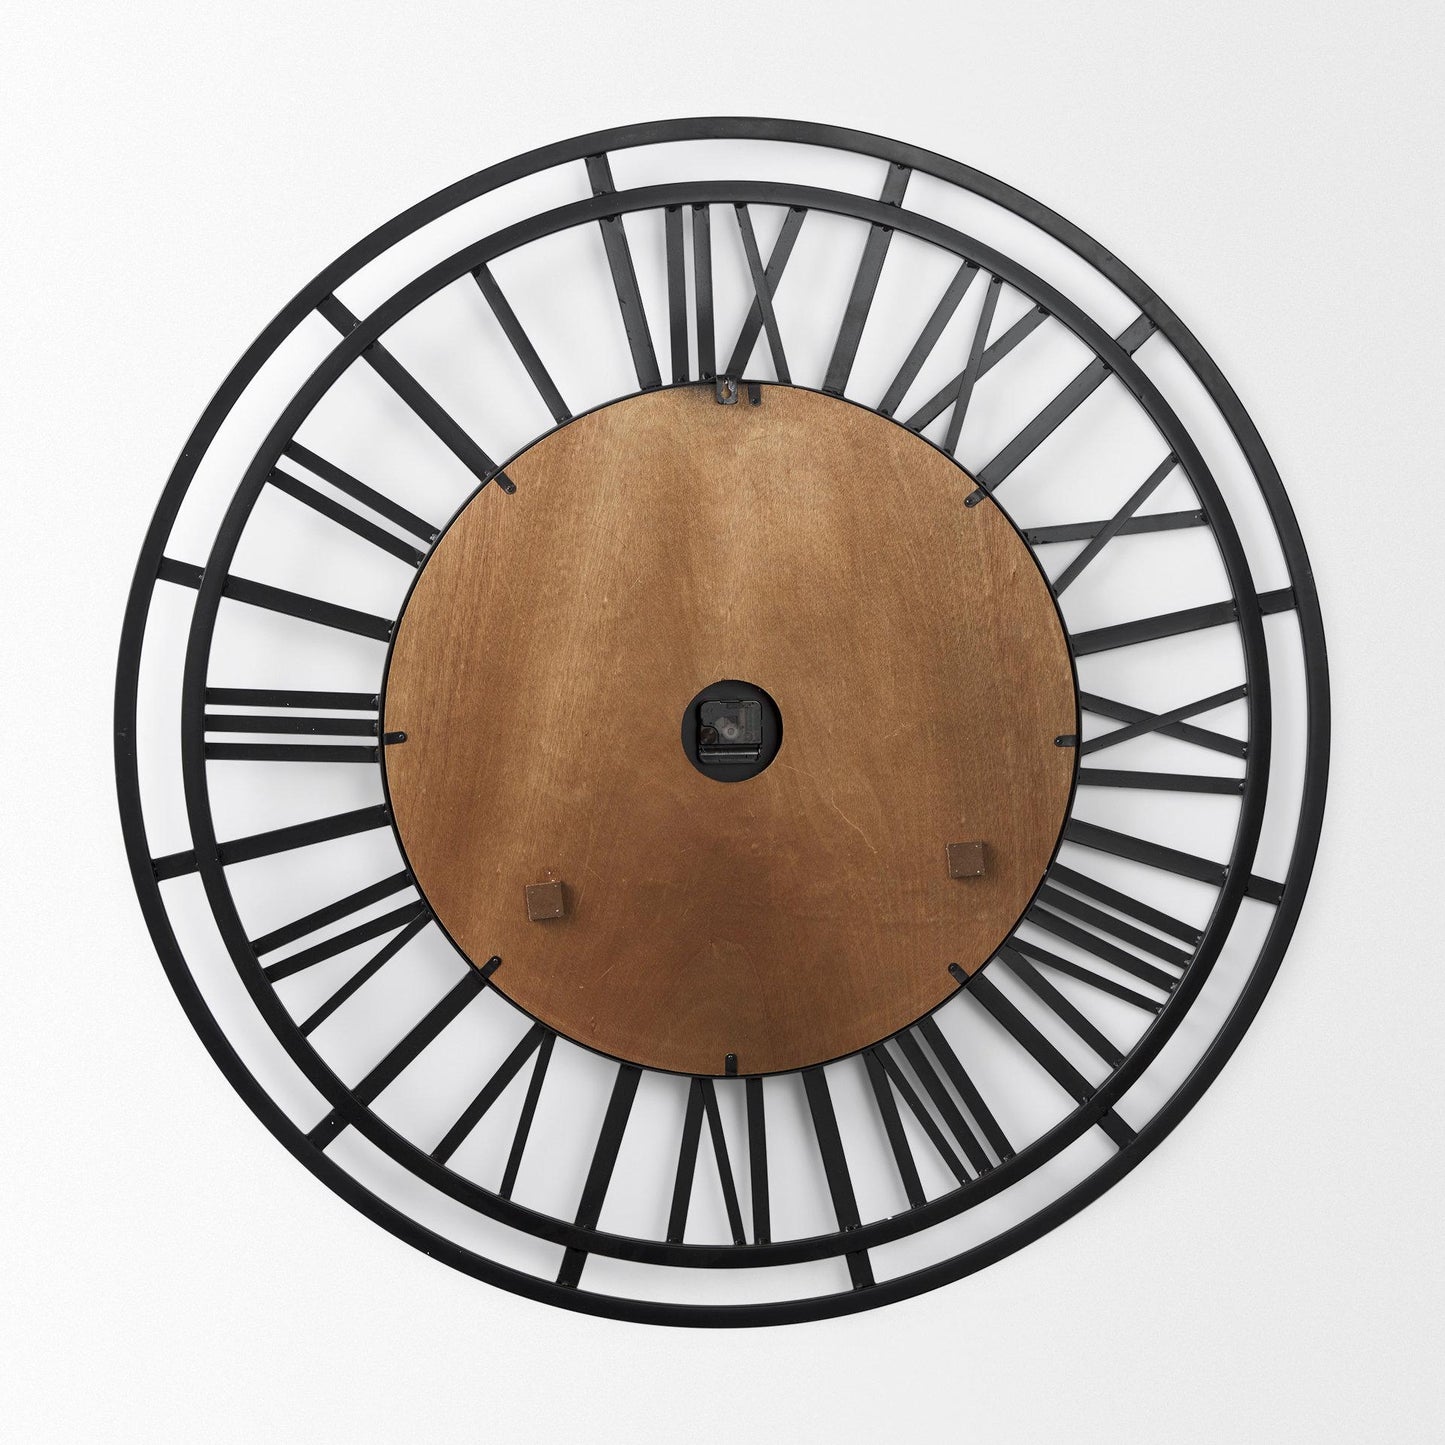 Lewiston 42.1L x 2.6W x 42.1H Black Iron W/Wood Round Wall Clock